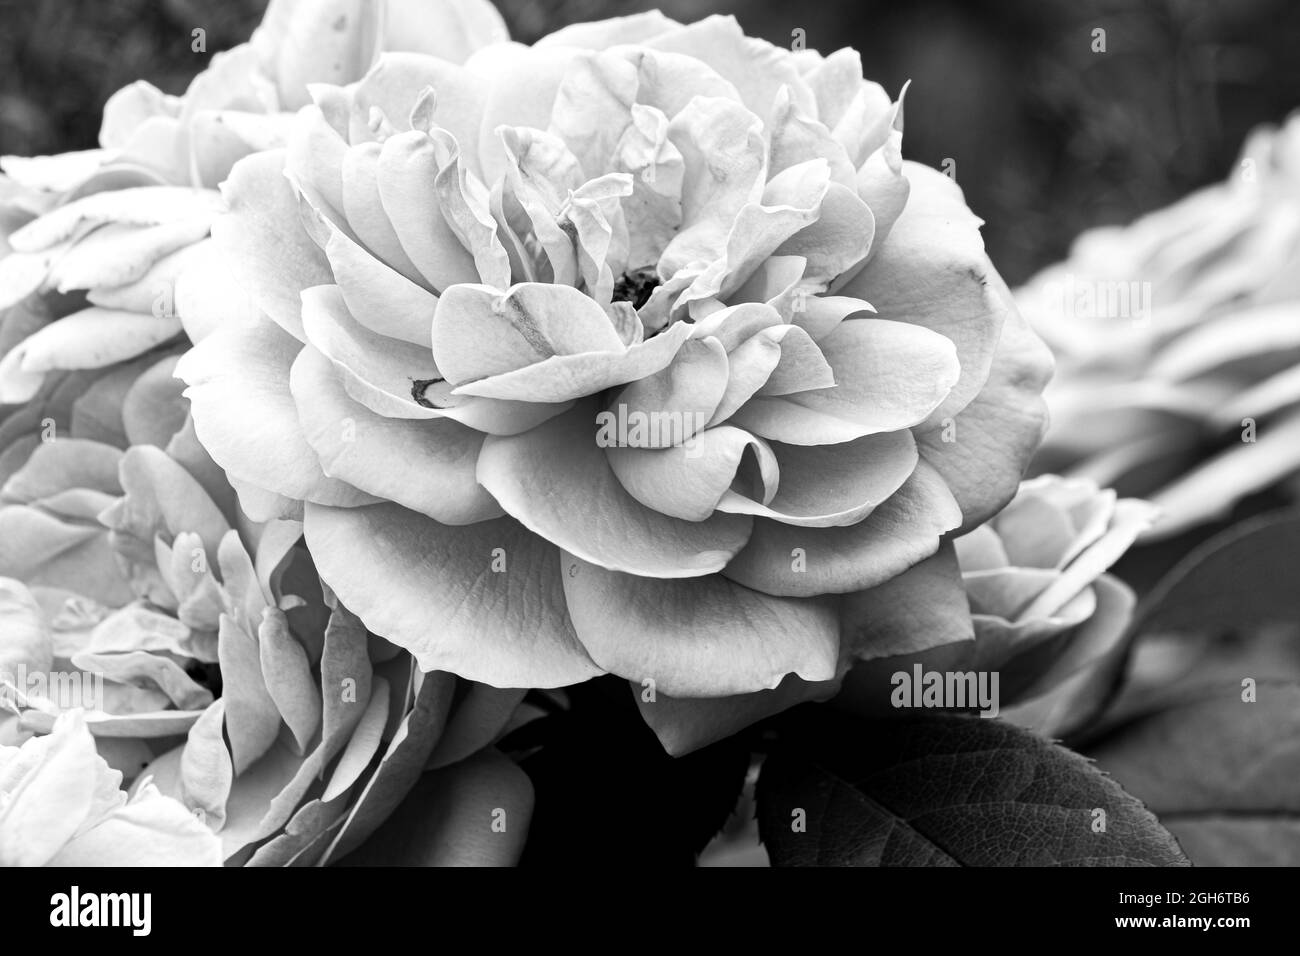 Une photo de roses en noir et blanc Banque D'Images